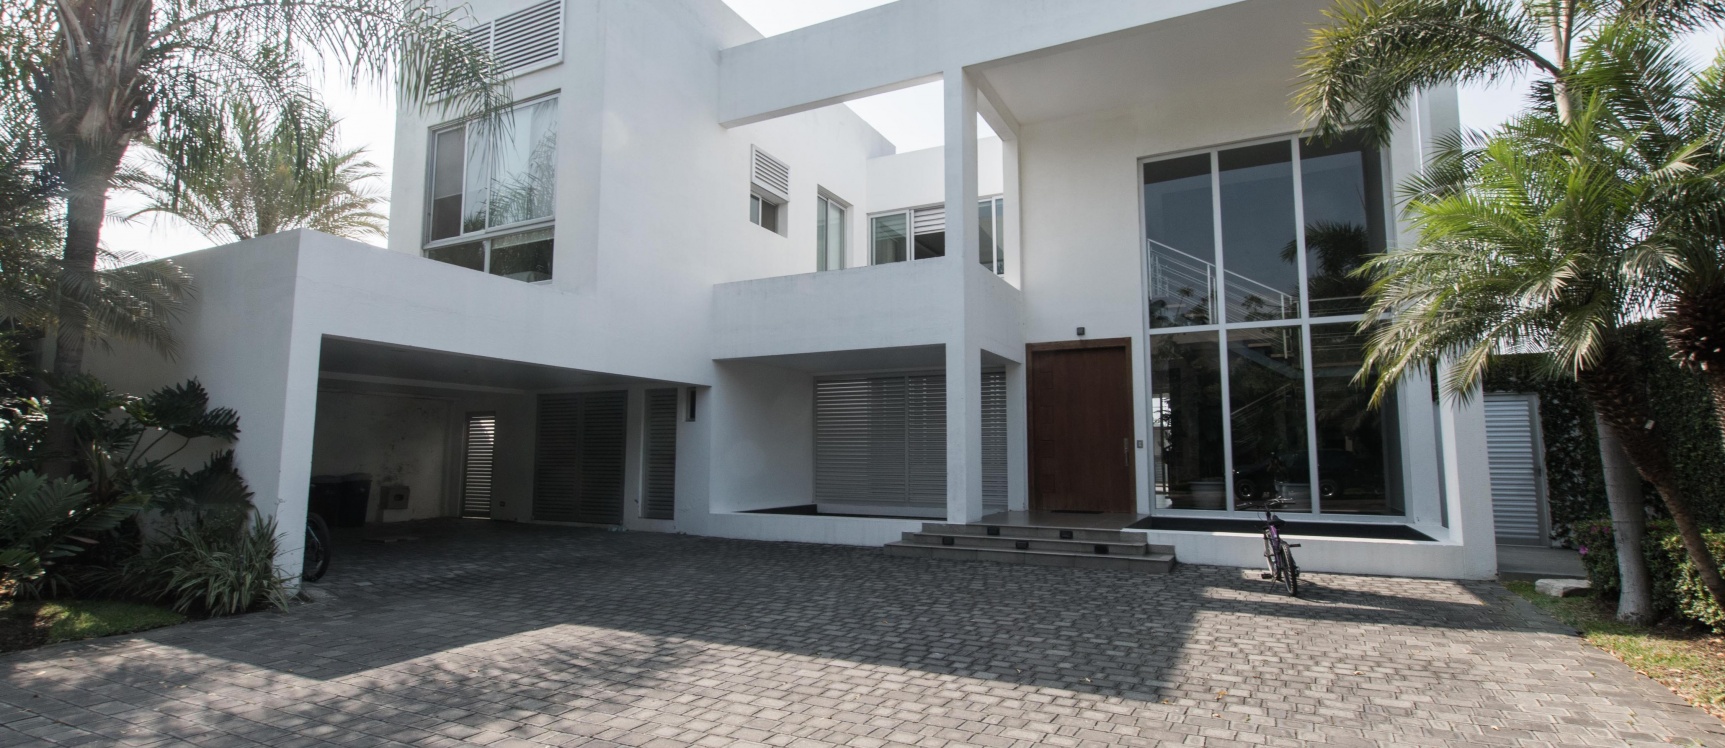 GeoBienes - Casa de 2 plantas en venta en Urbanización La Ensenada, Isla Mocolí - Plusvalia Guayaquil Casas de venta y alquiler Inmobiliaria Ecuador